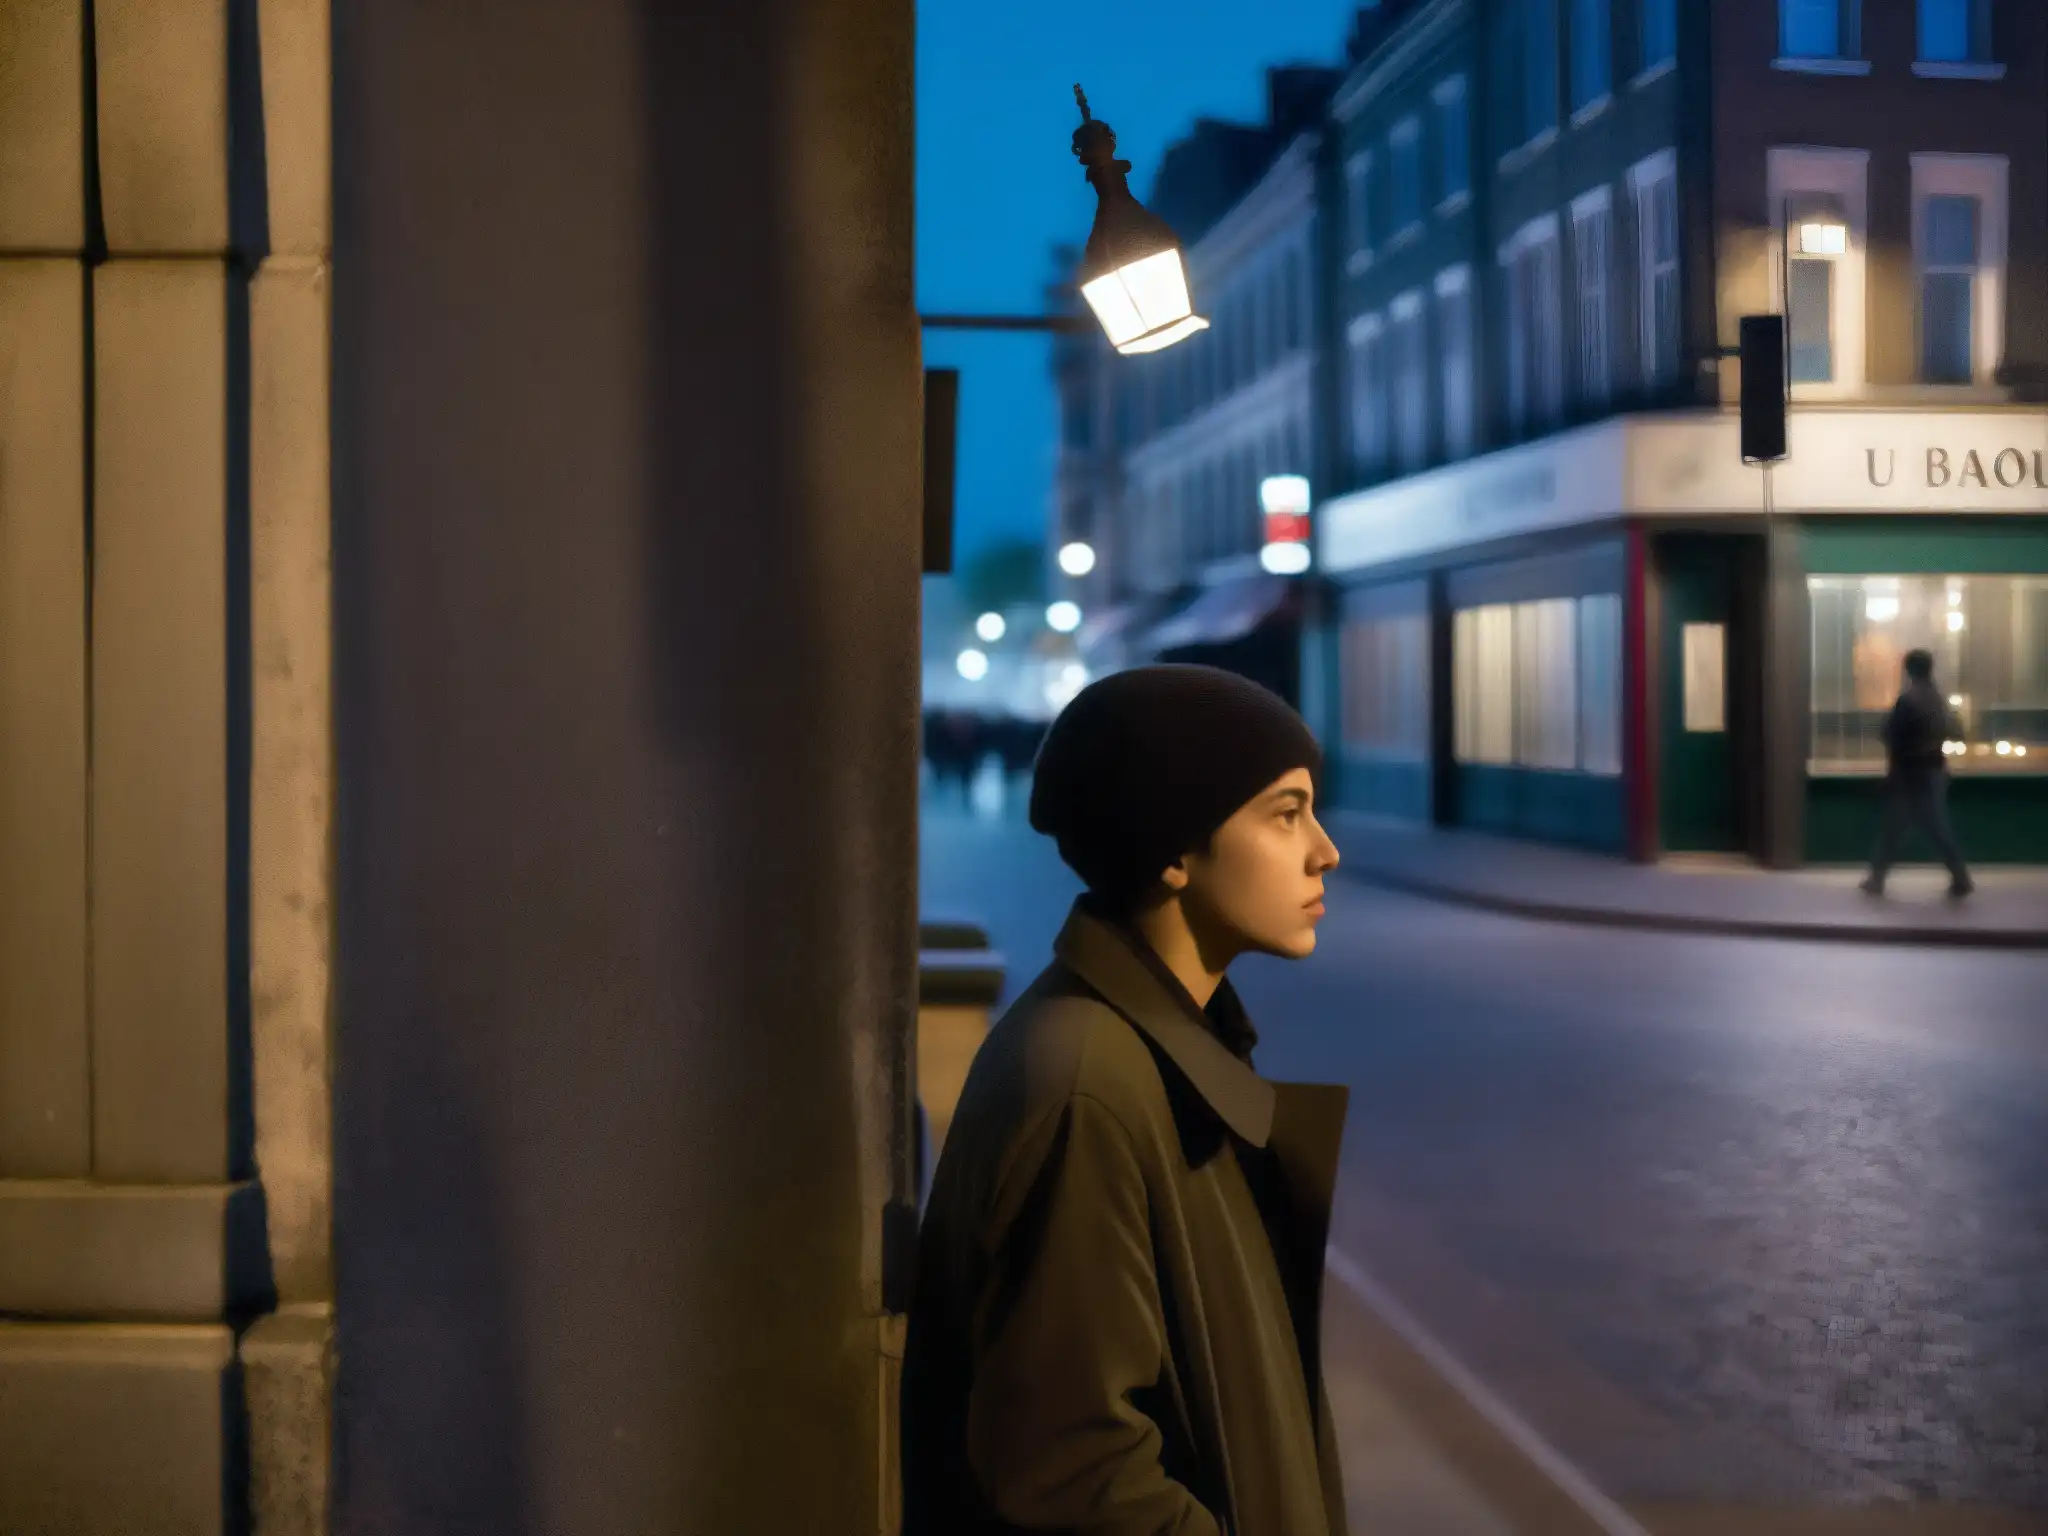 En una esquina oscura de la calle, una figura solitaria susurra a un grupo de oyentes con expresiones de miedo y fascinación